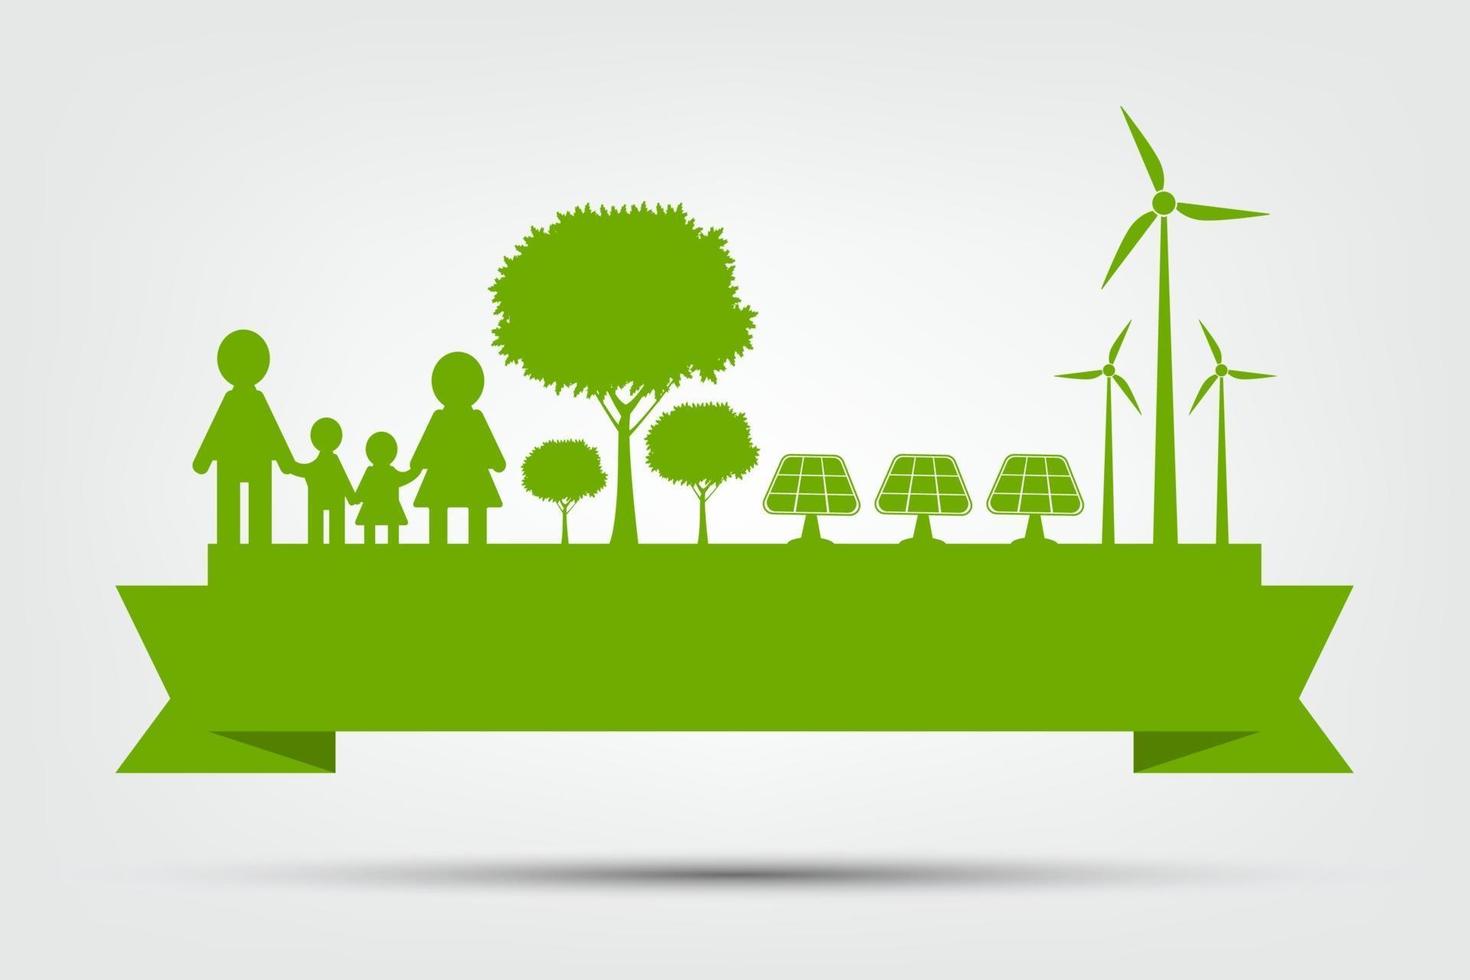 concepto de medio ambiente mundial y símbolo de la tierra con hojas verdes alrededor de las ciudades ayudan al mundo con ideas ecológicas, ilustración vectorial vector